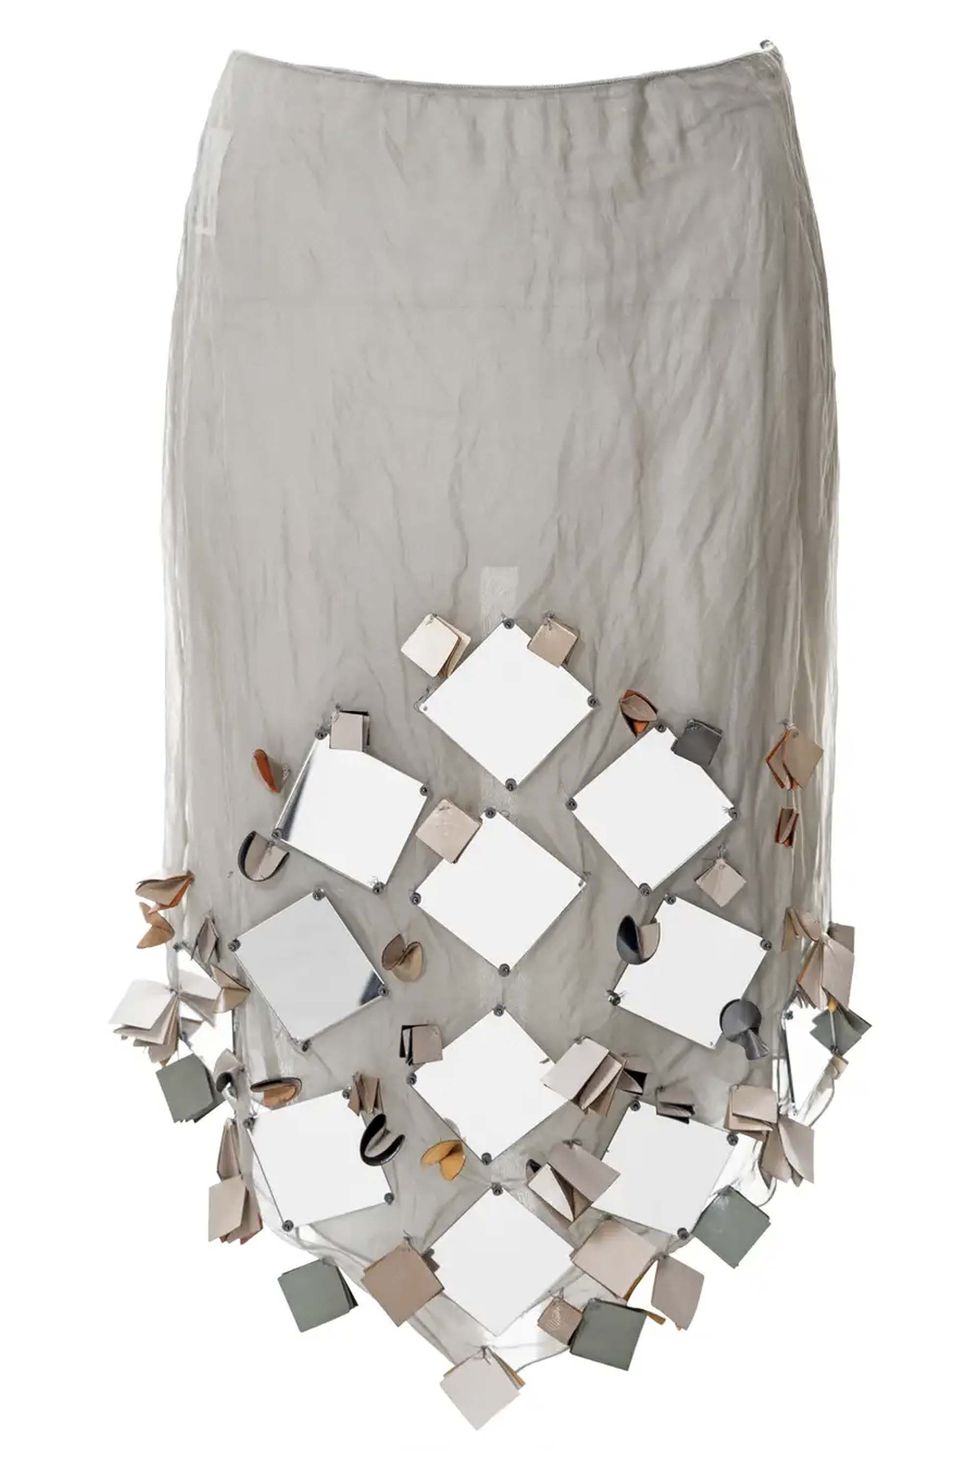 Mirrored skirt, spring/summer 1999